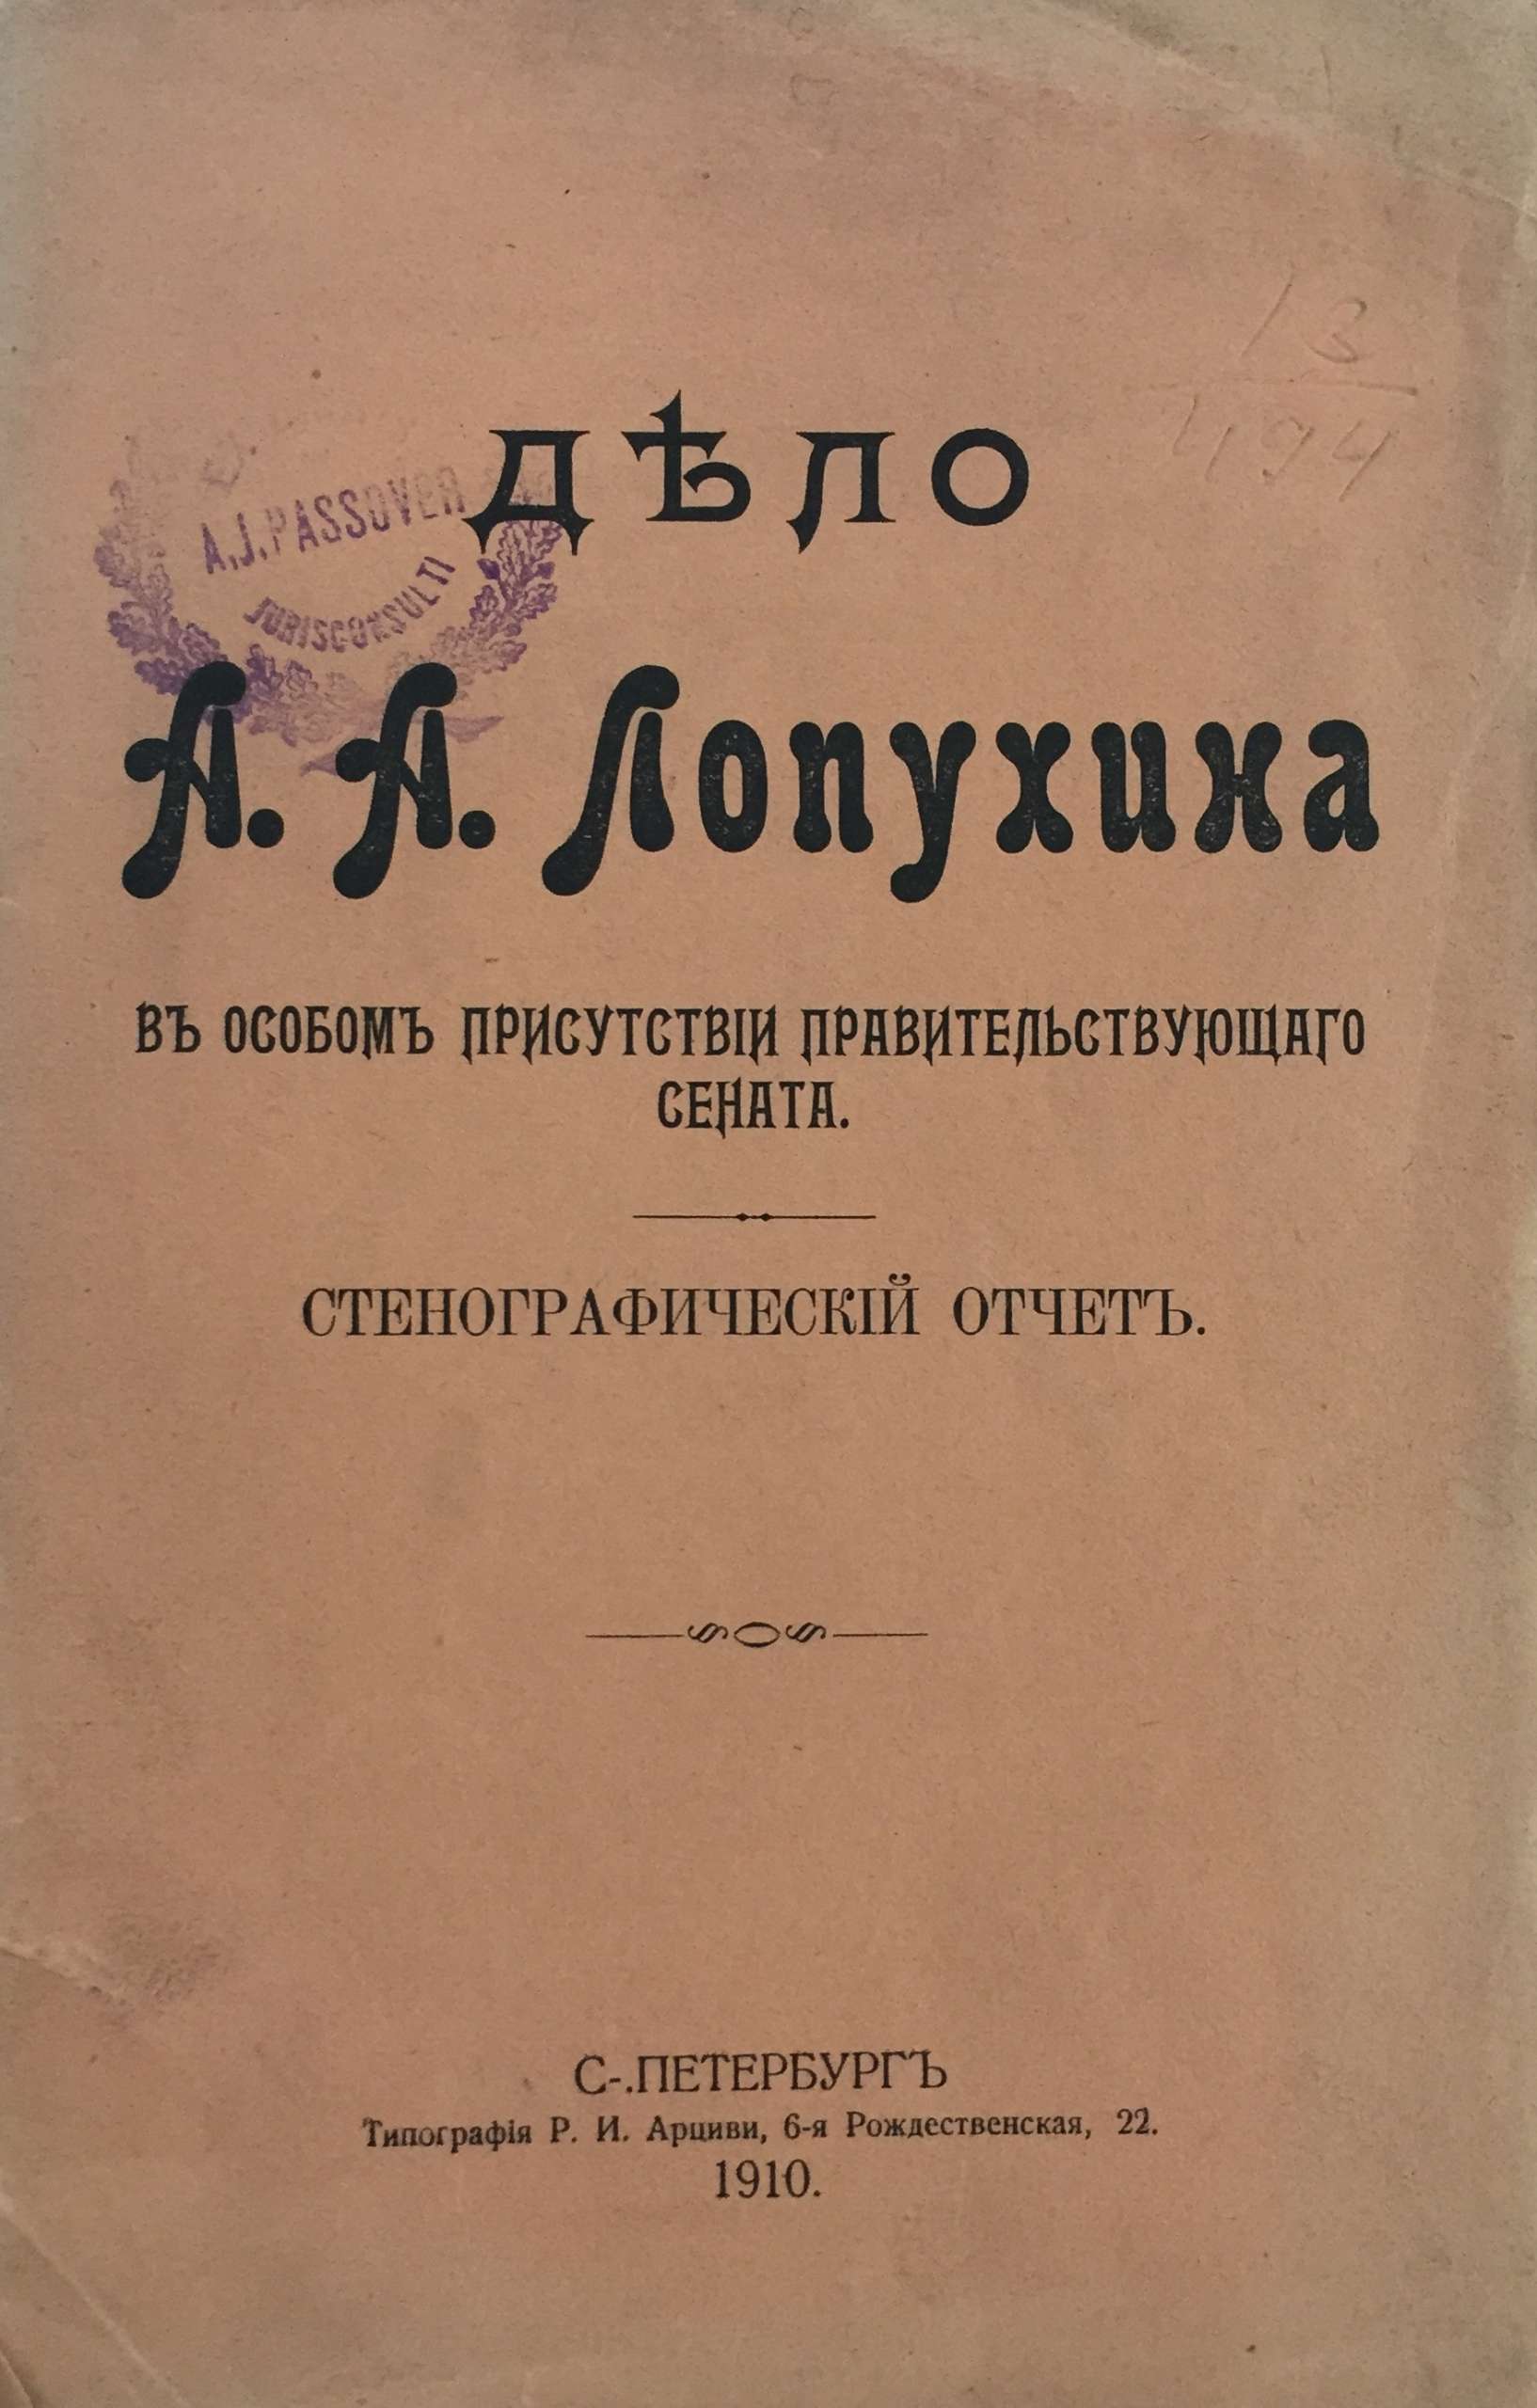 Дело А. А. Лопухина. Стенографический отчет. 1910